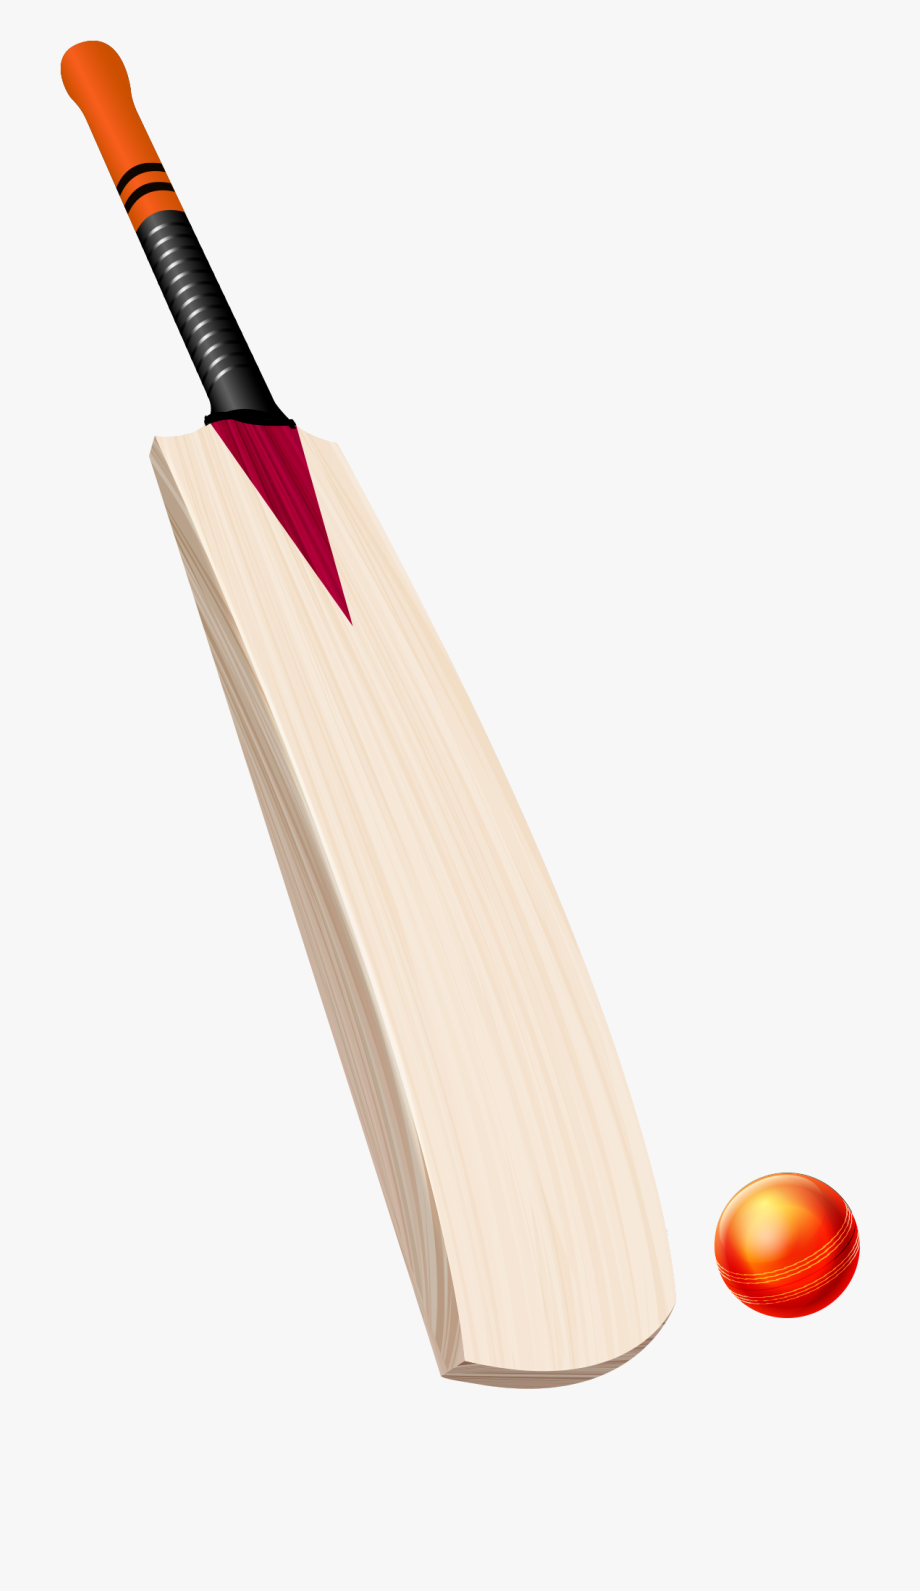 bat clipart cricket bat